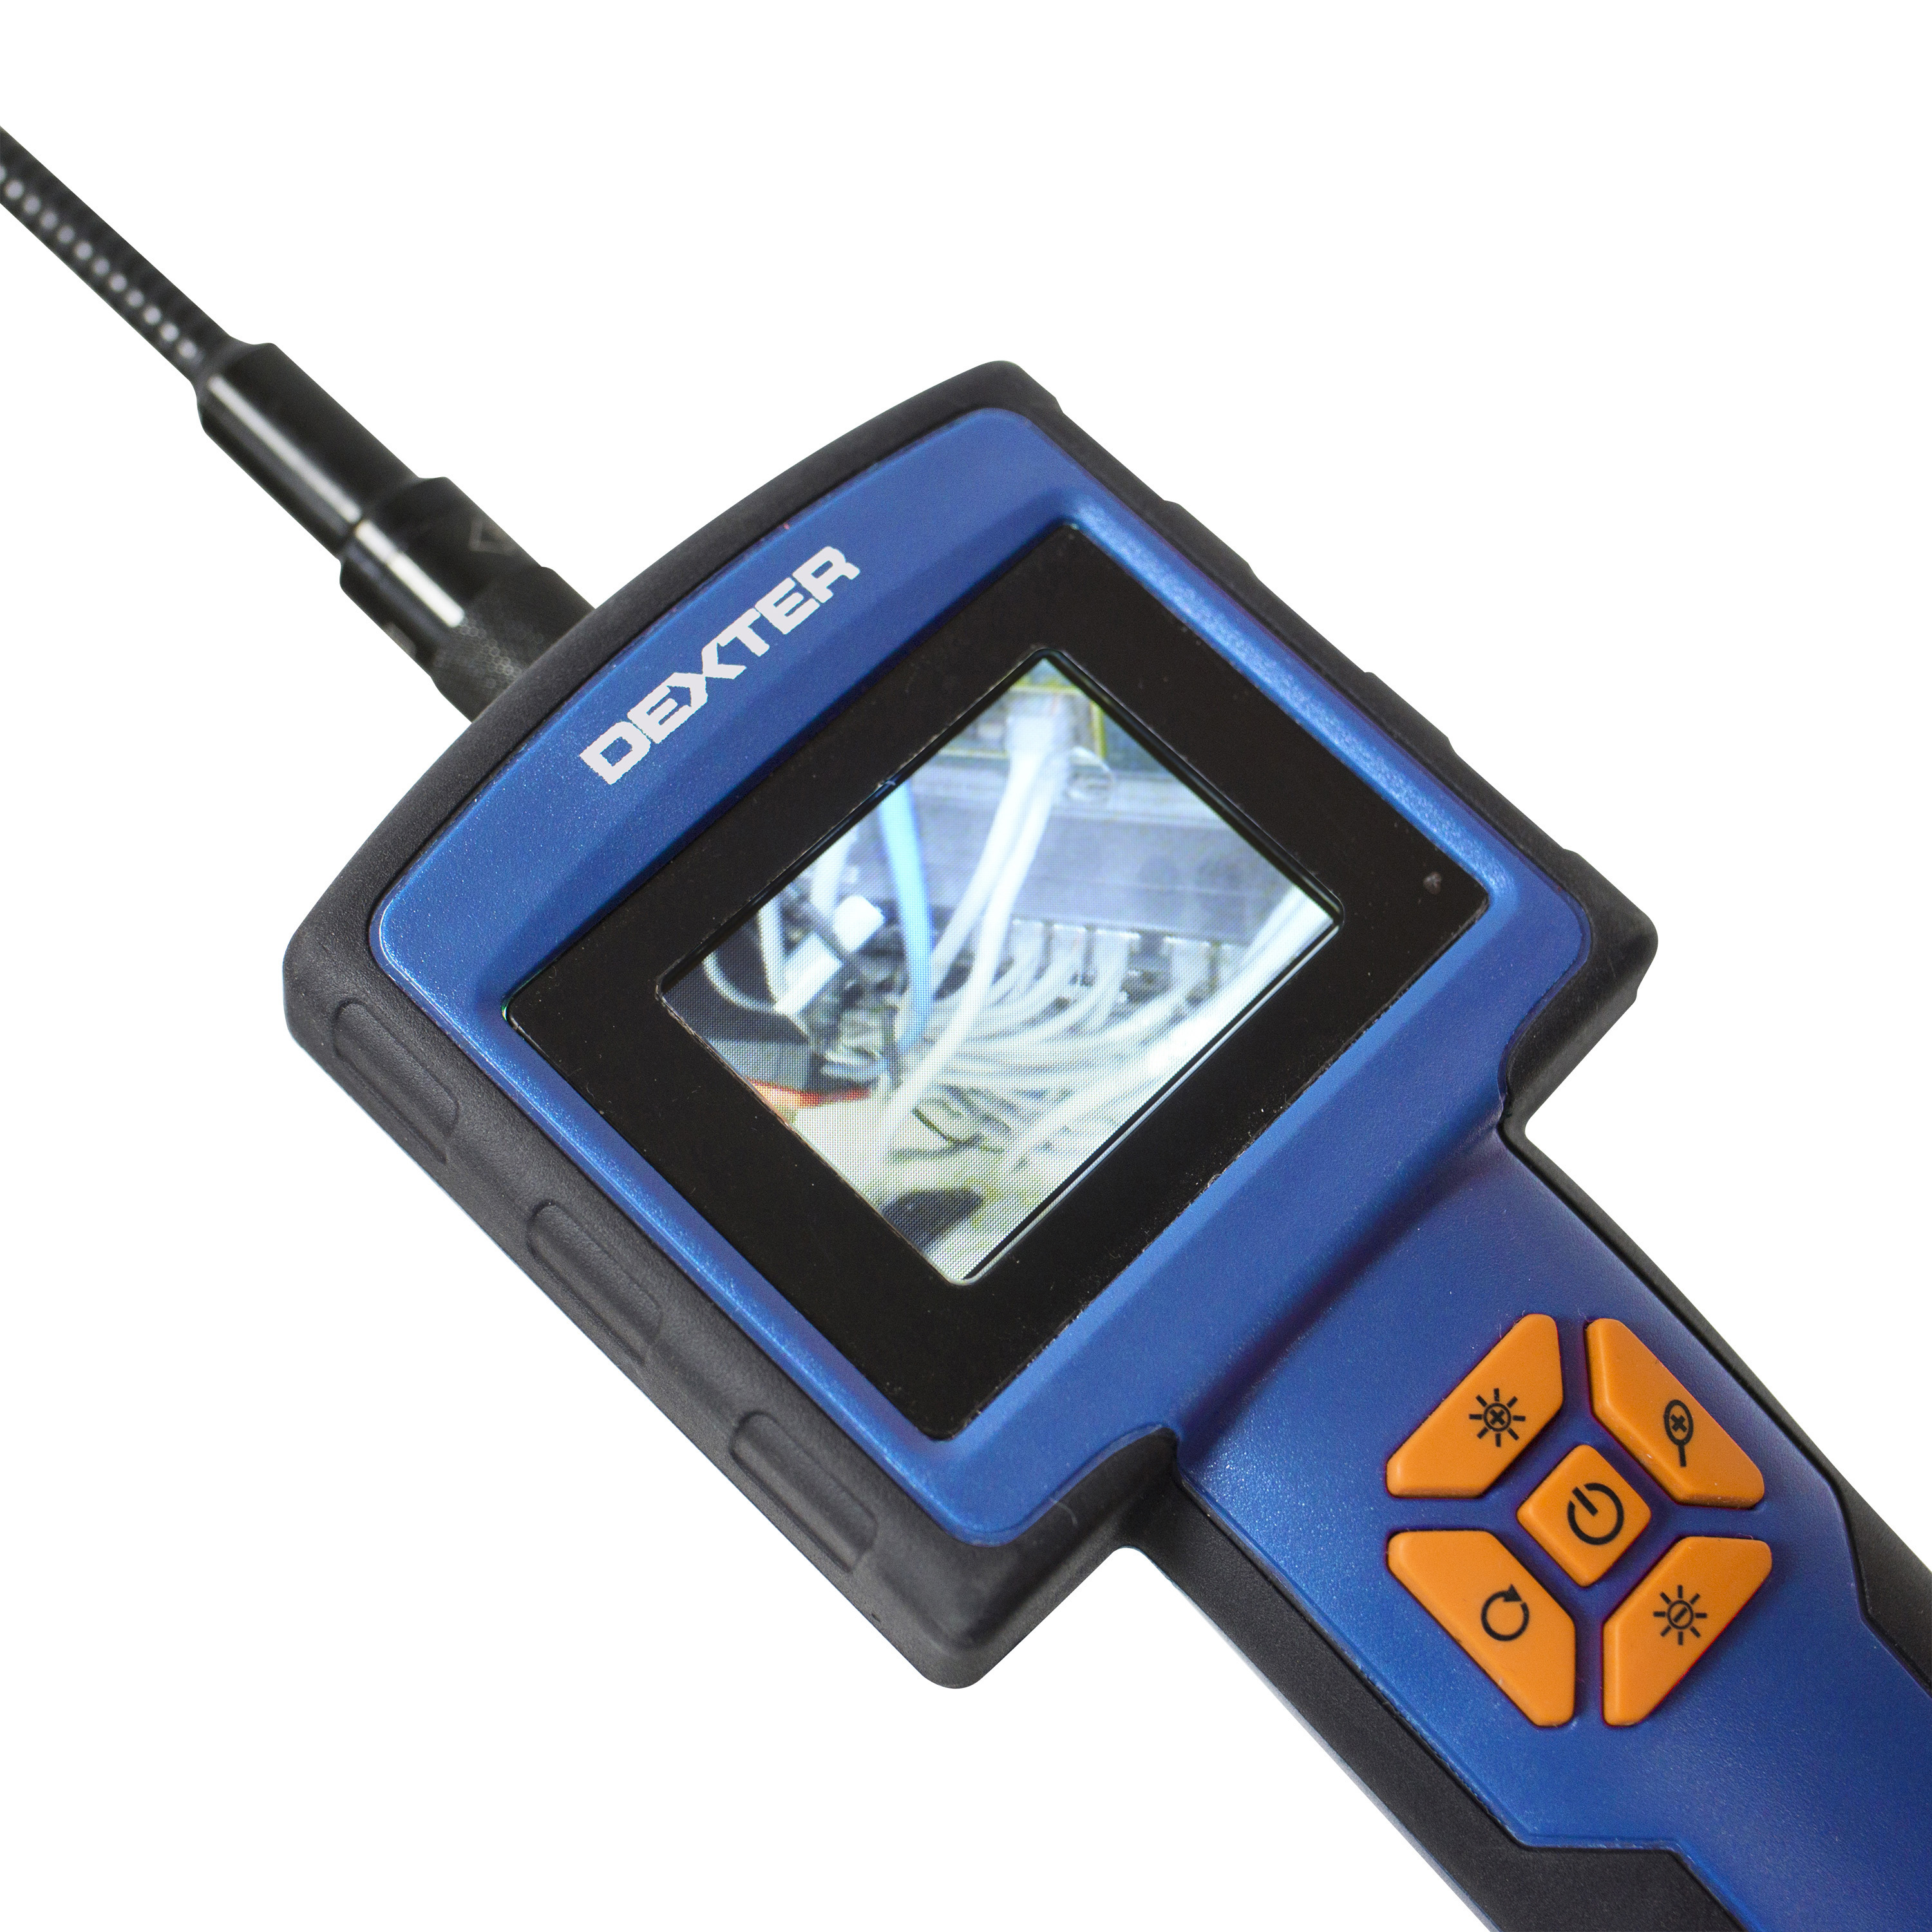 Caméra d'inspection de tuyau AREBOS avec écran 30m 7 couleur TFT